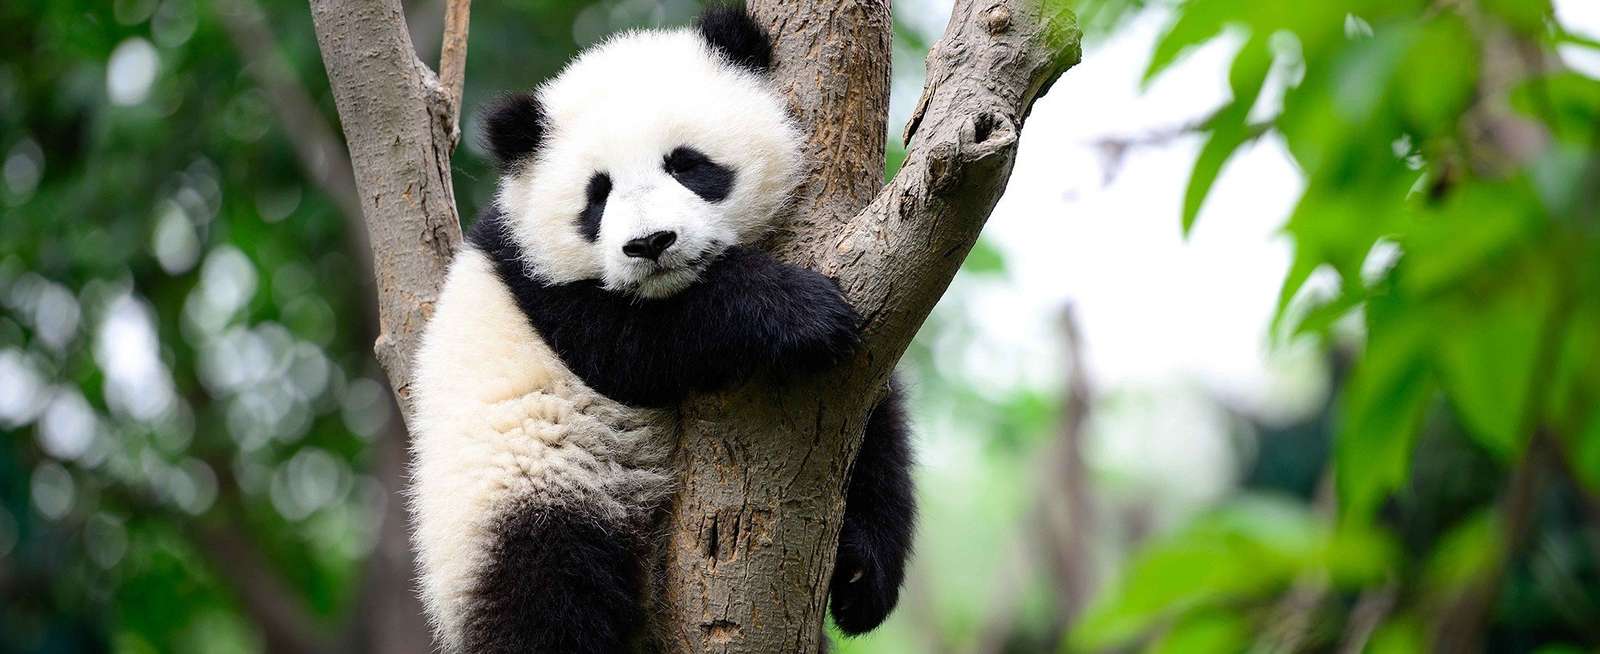 панда животное зоопарка пазл онлайн из фото